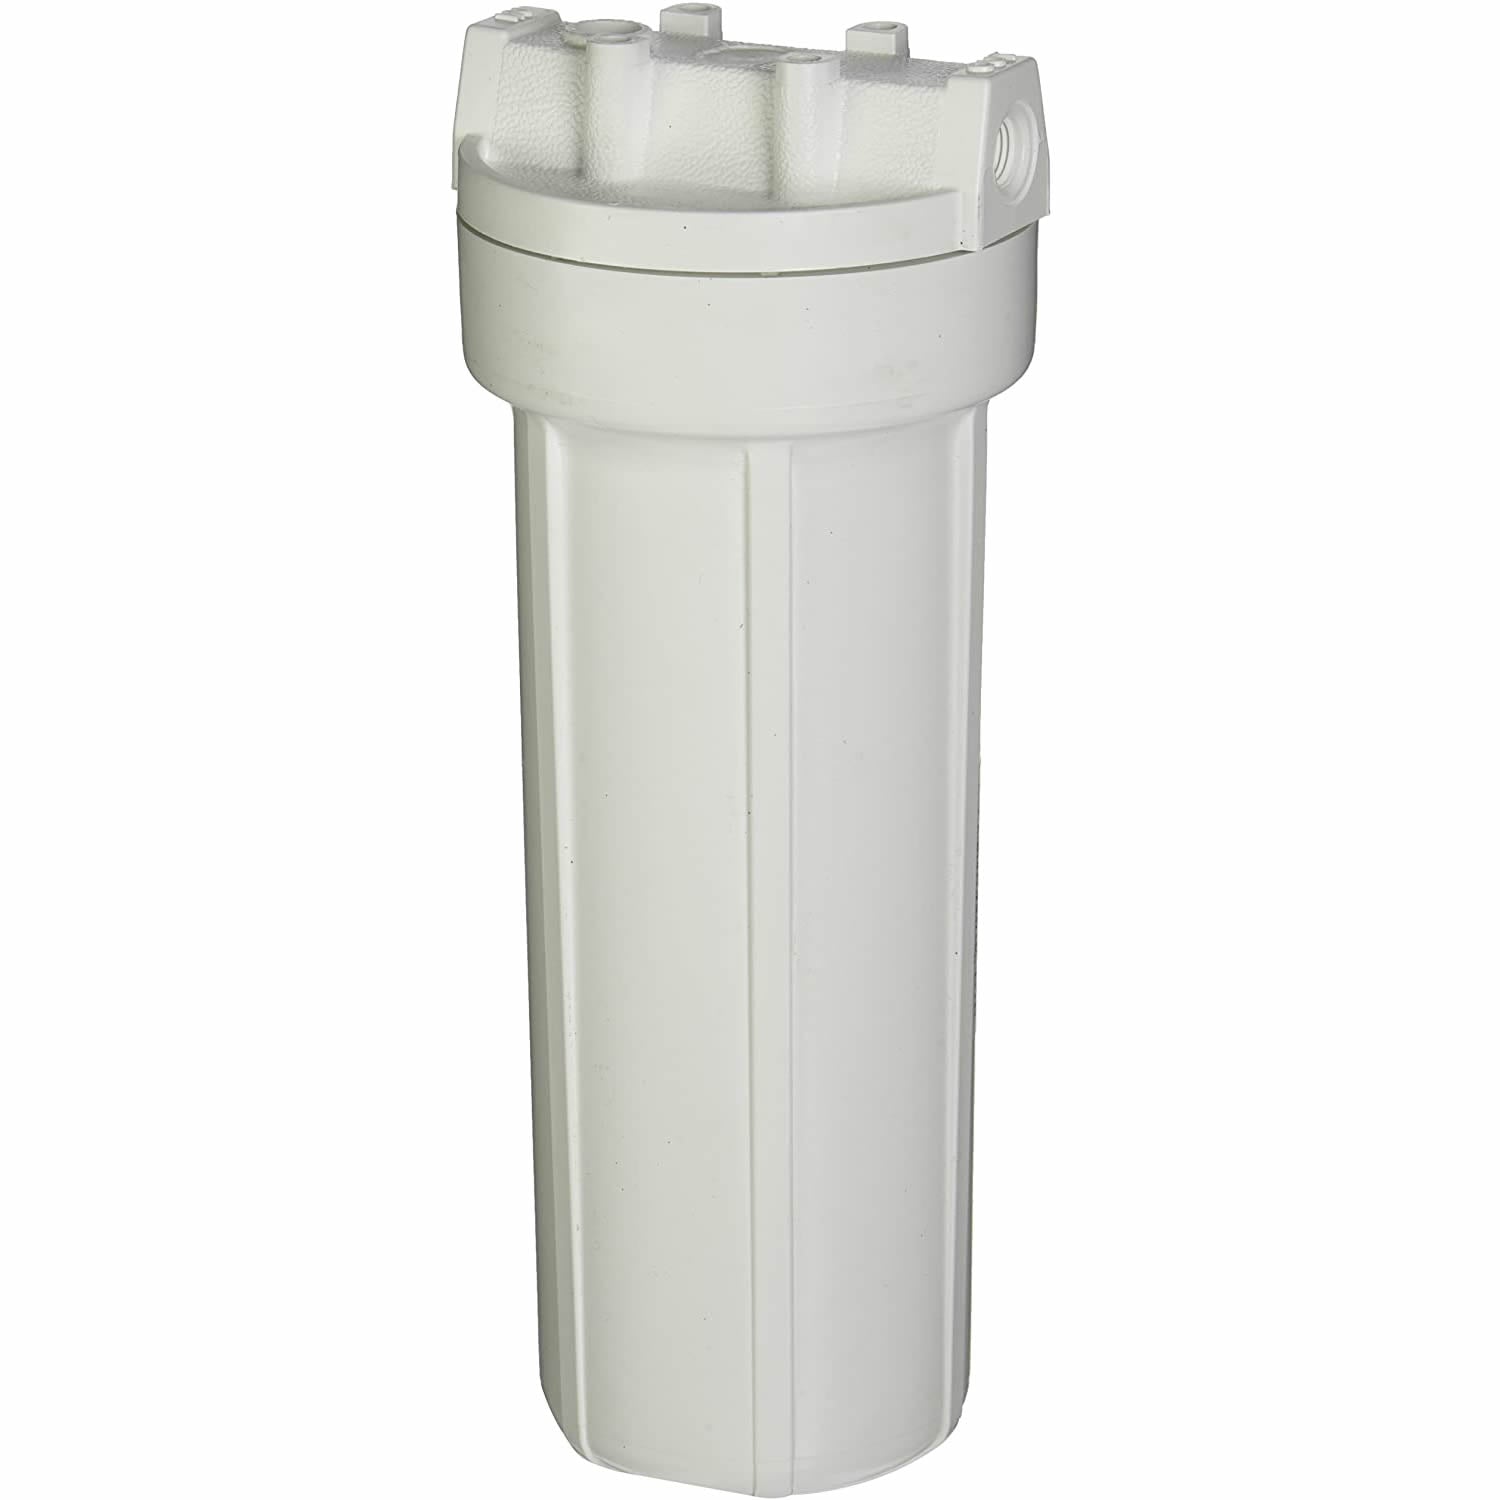 Pentek - Slim Line 10" Filter Housing - White Cap / White Sump